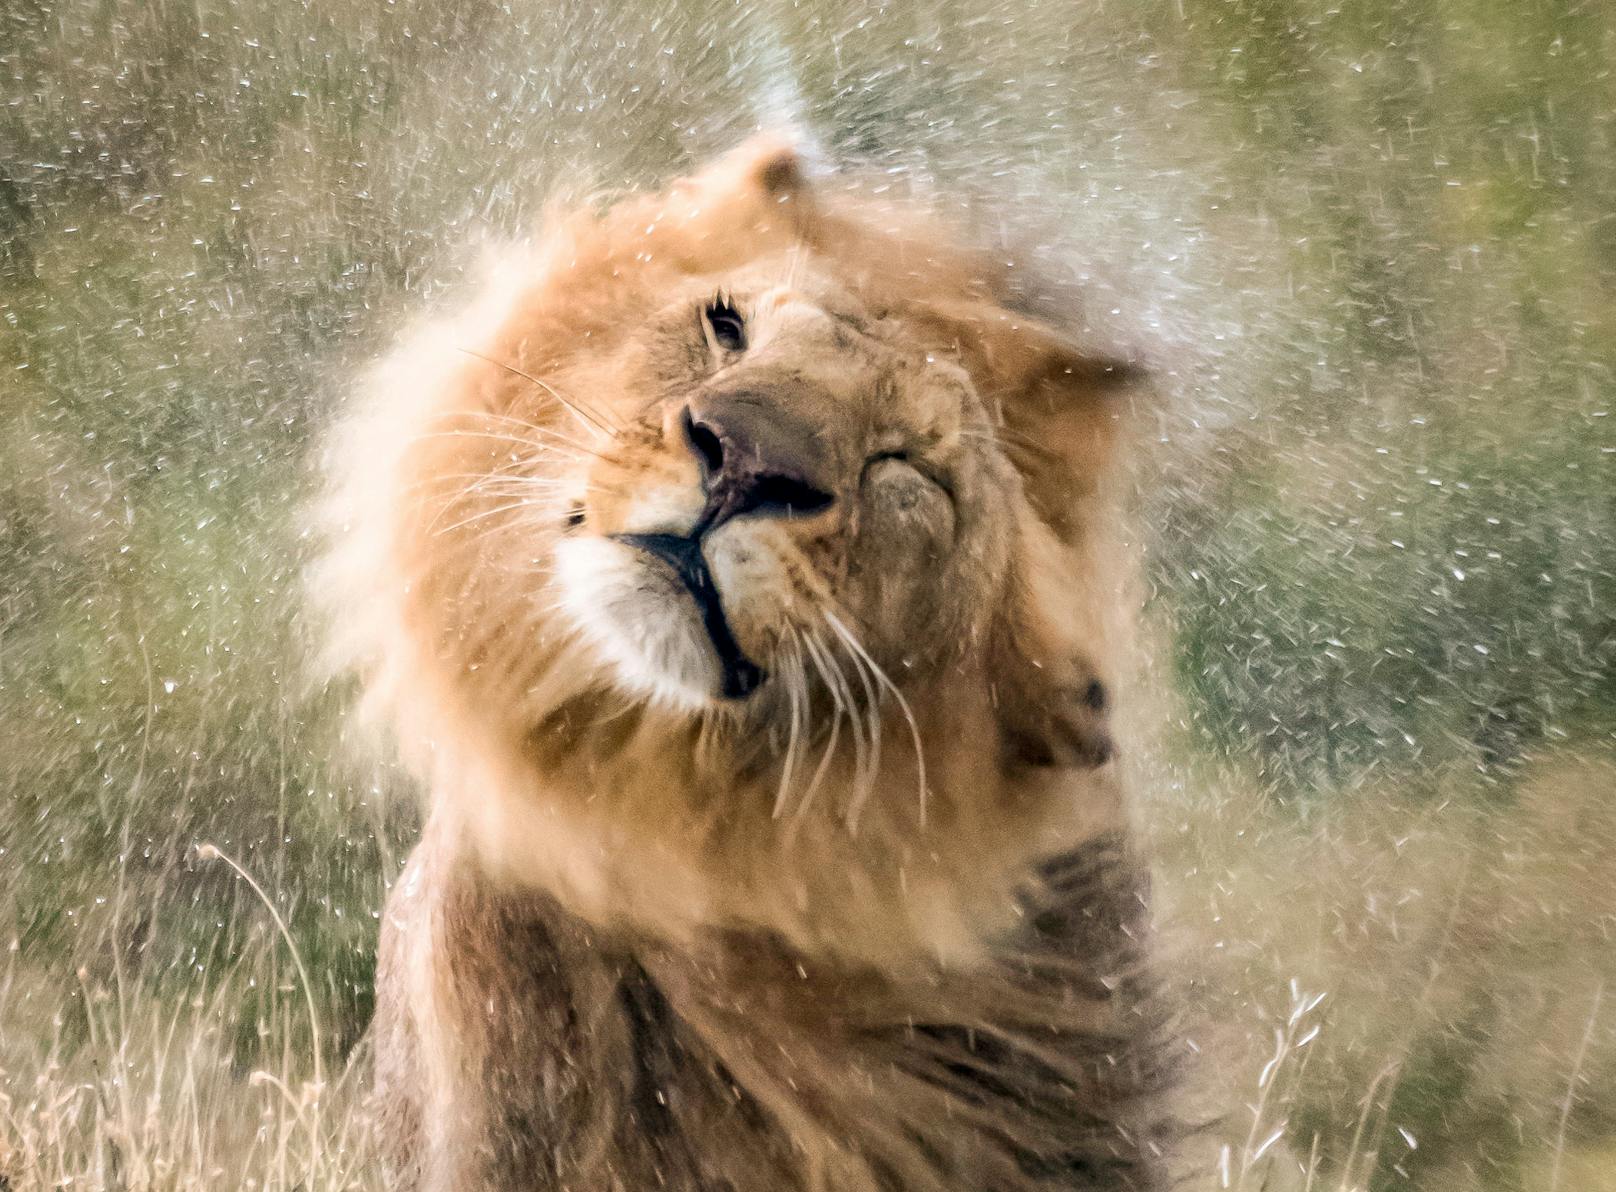 Nach einem Bad im kühlen Nass schüttelt dieser Löwe seine Mähne.